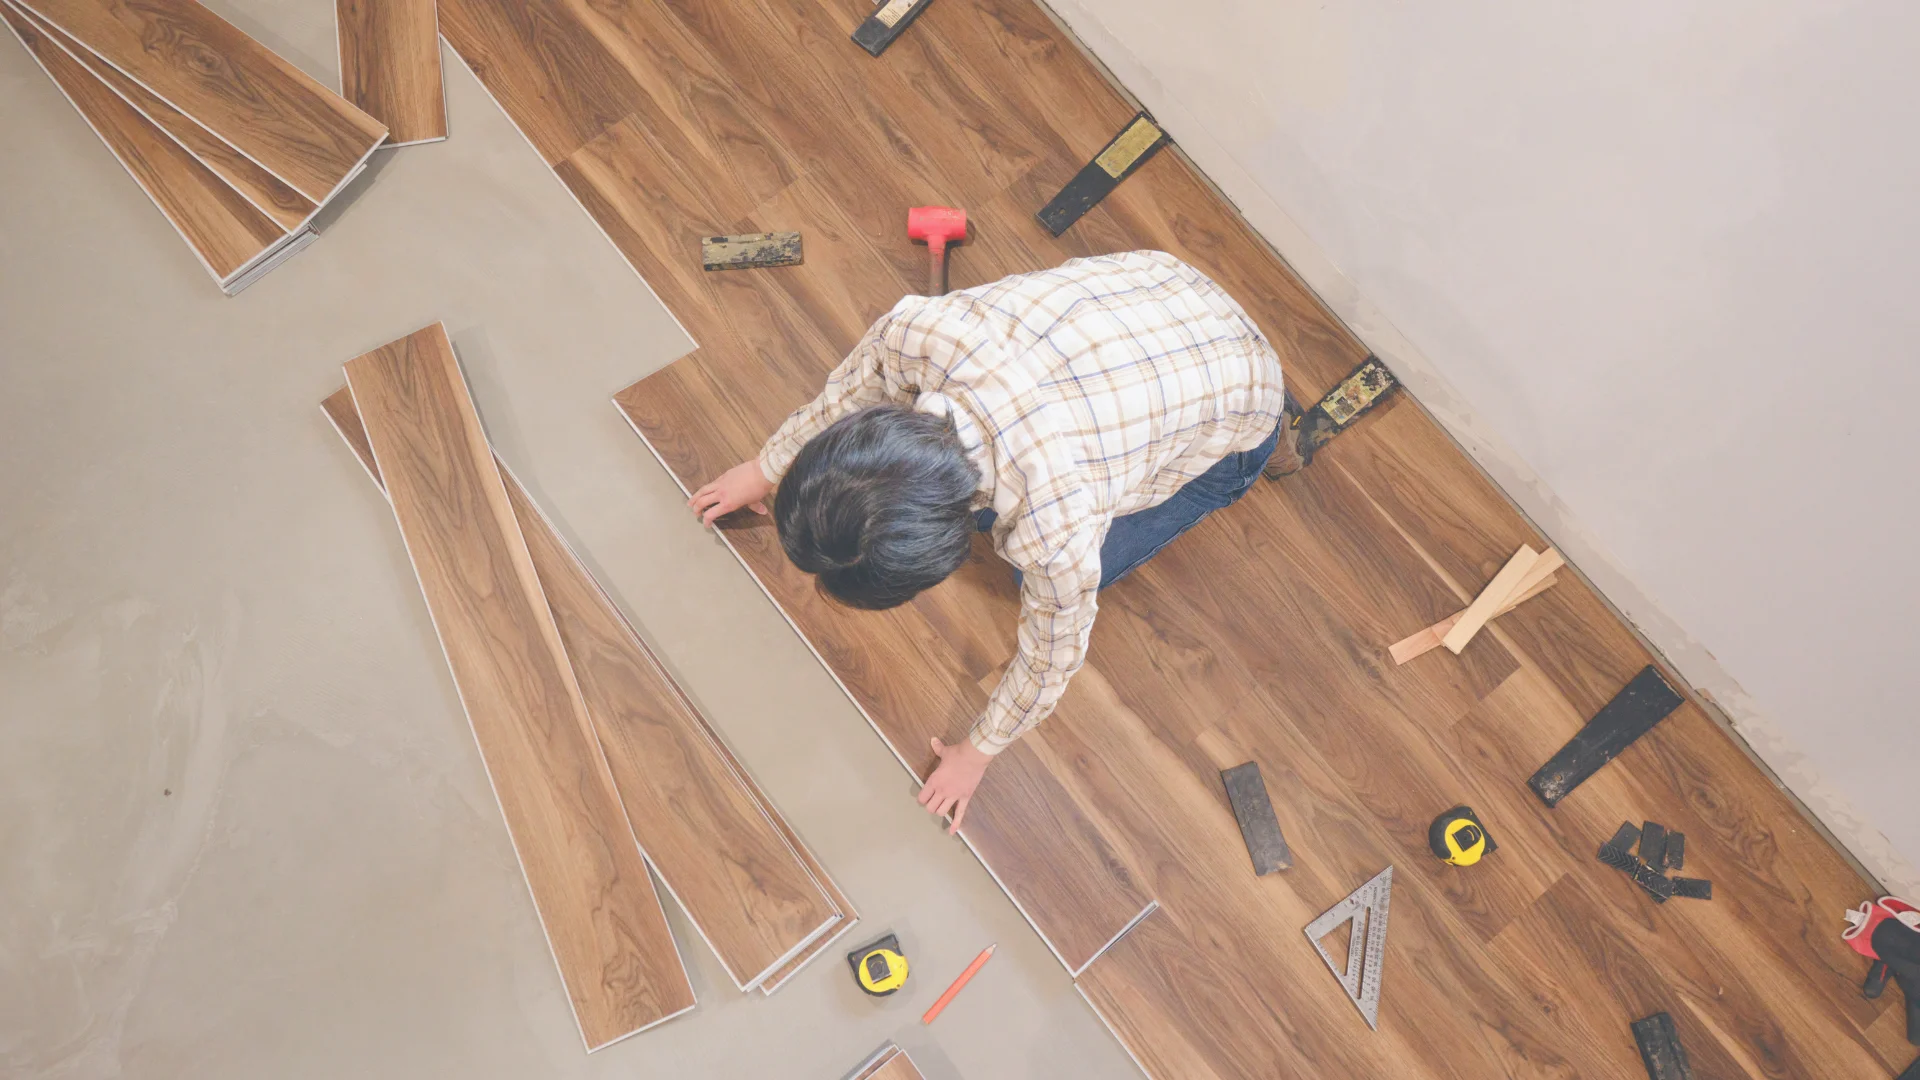 wood flooring installation in progress